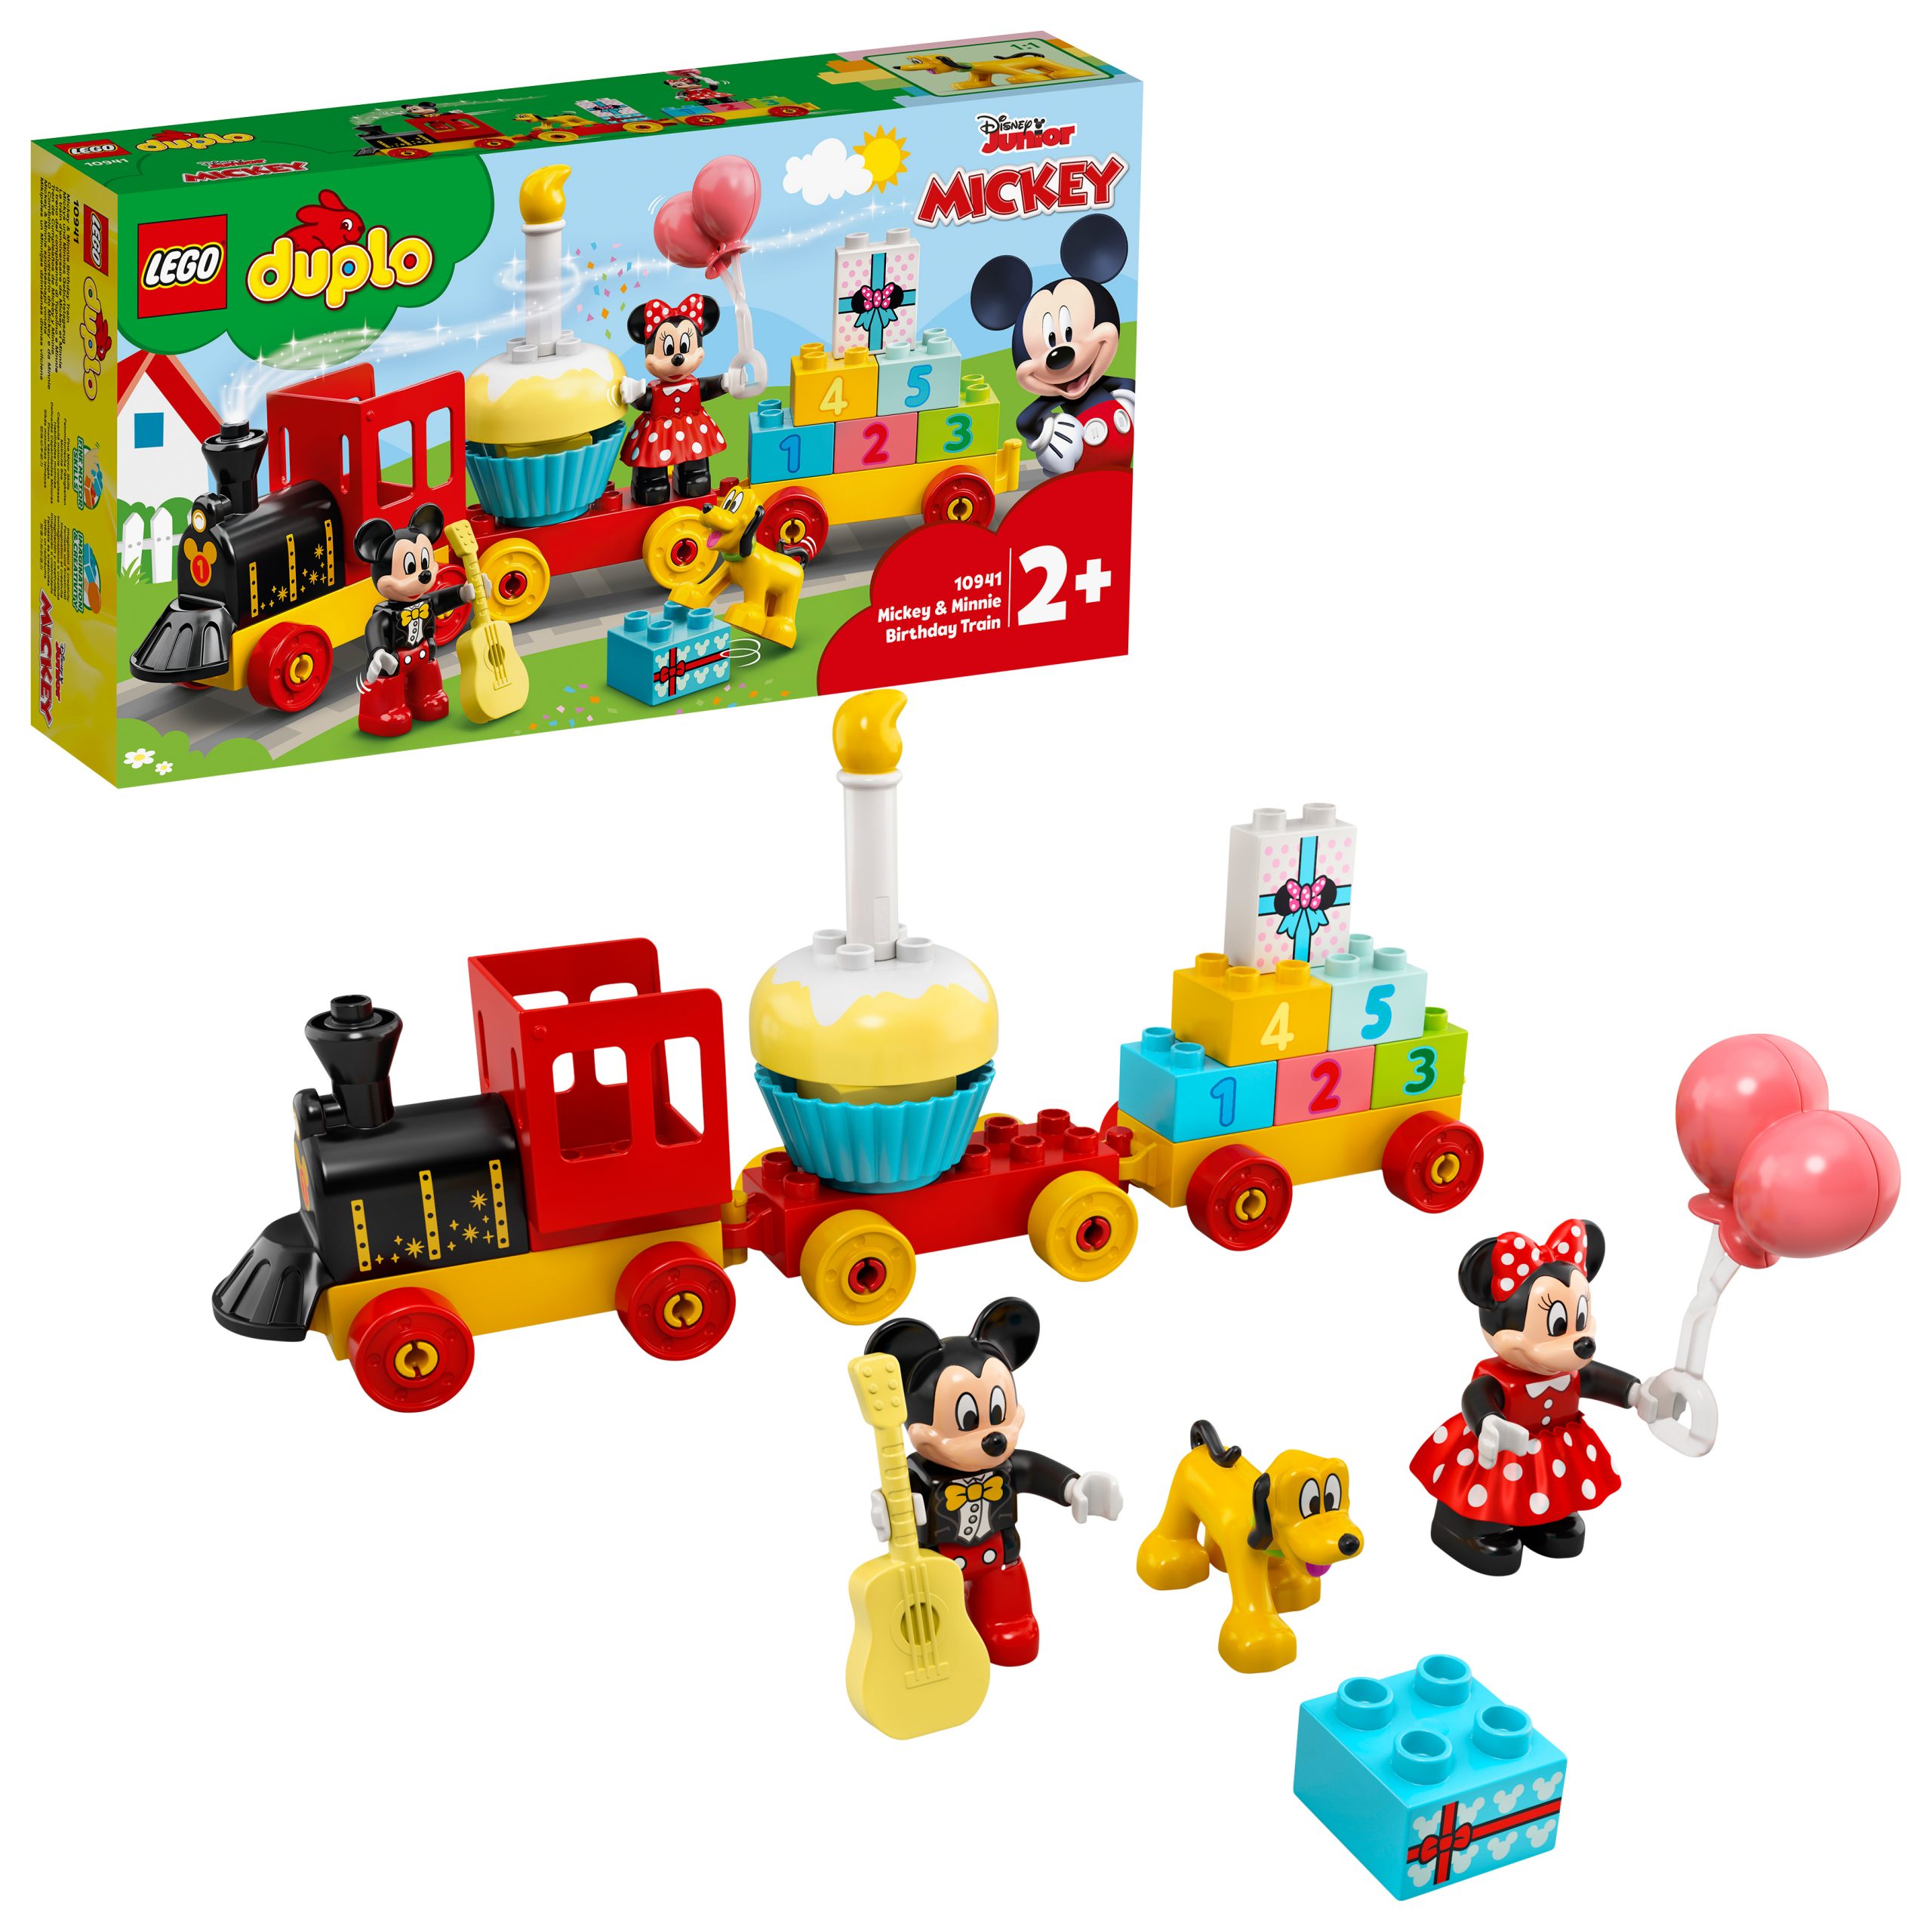 Lego duplo disney 10941 il treno del compleanno di topolino e minnie, giochi educativi per bambini dai 2 anni, idea regalo - LEGO DUPLO, Lego